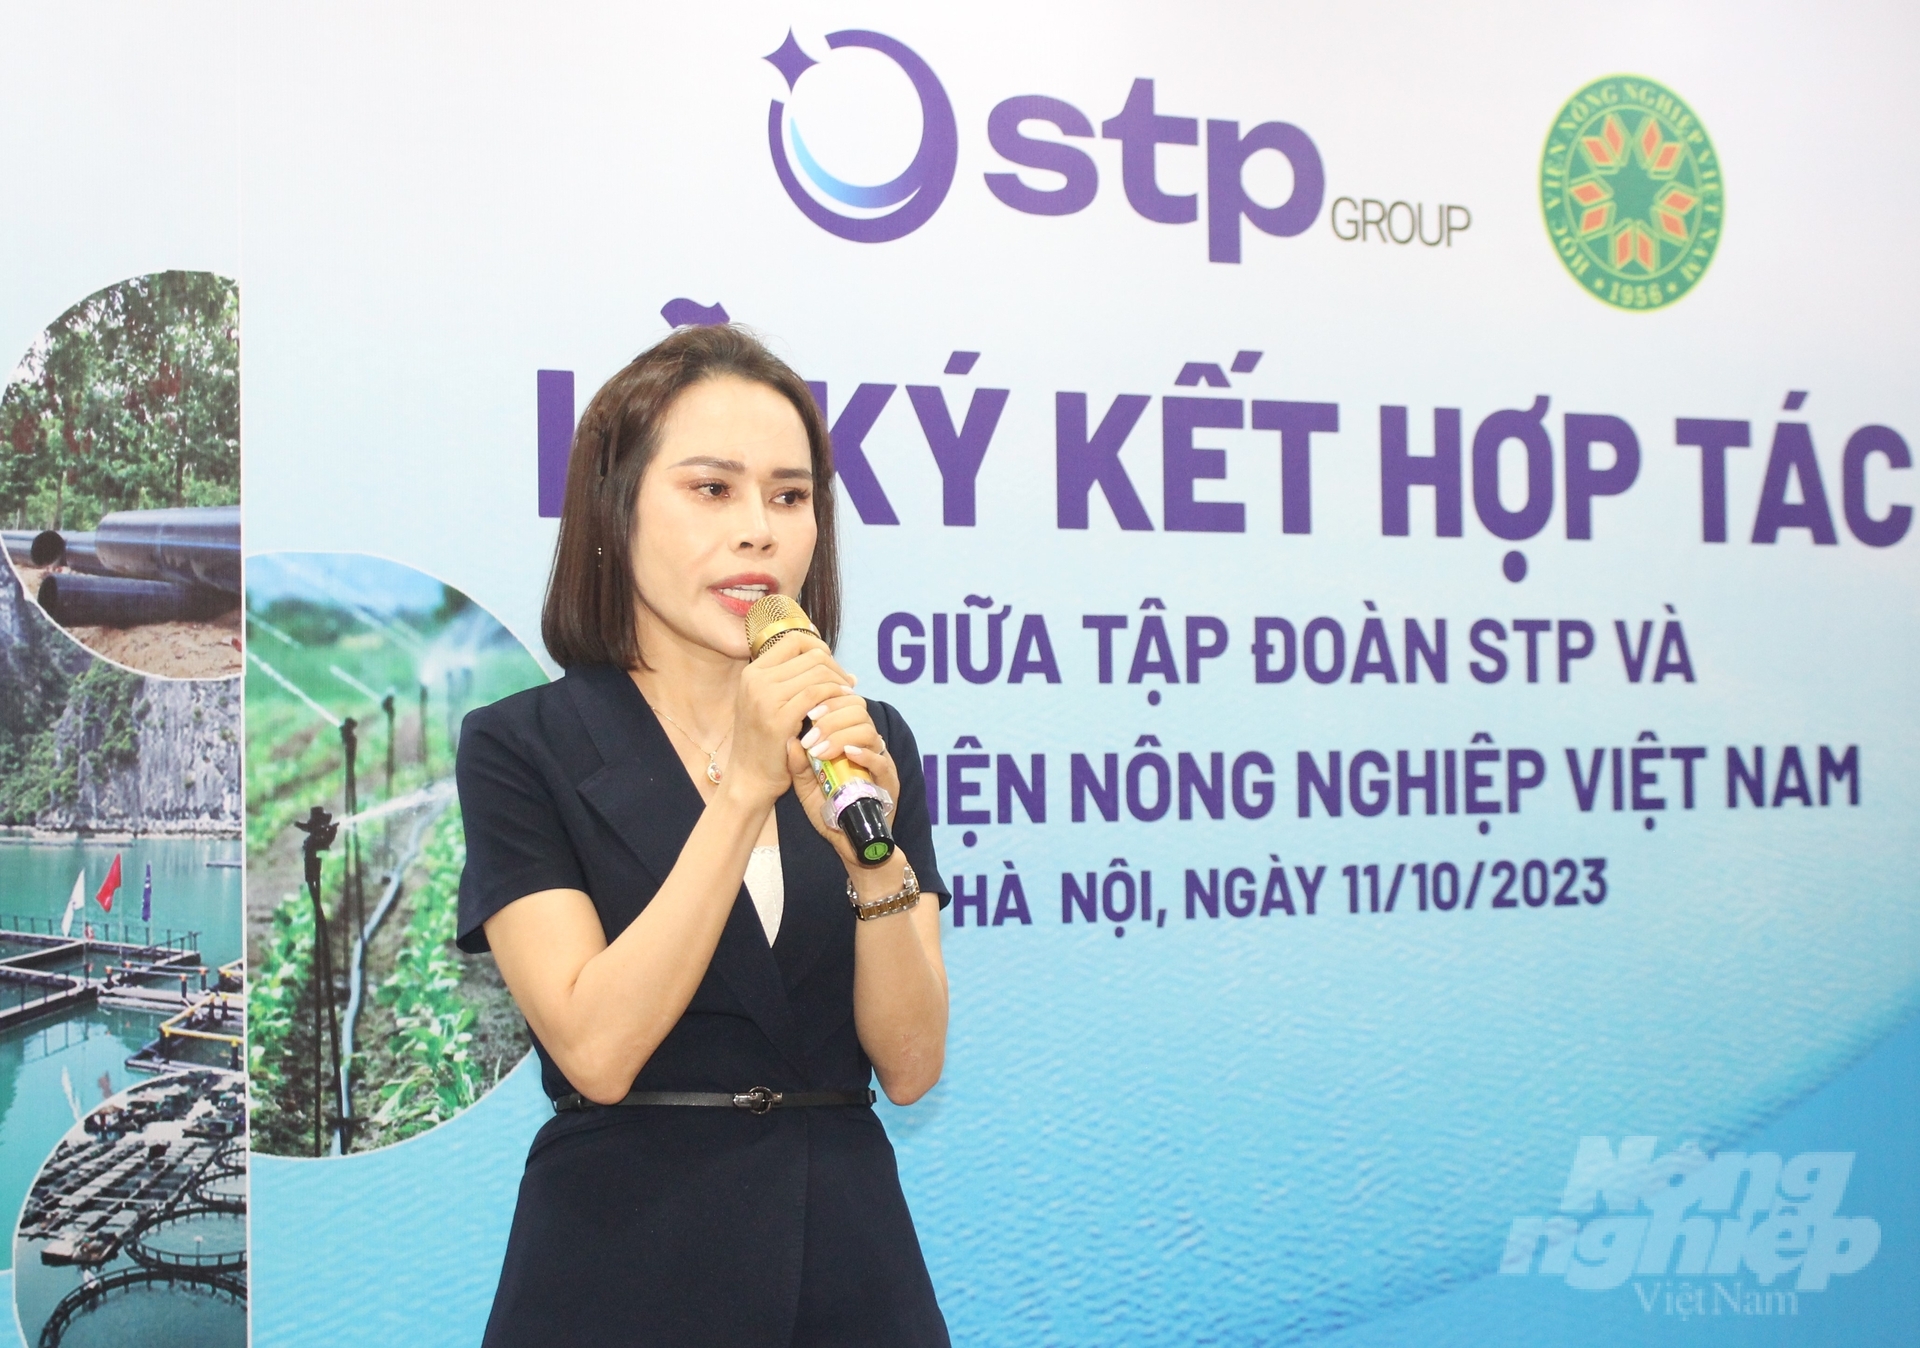 Bà Nguyễn Thị Hải Bình, Tổng Giám đốc STP Group chia sẻ những nội dung hai đơn vị sẽ hợp tác trong thời gian tới. Ảnh: Trung Quân.